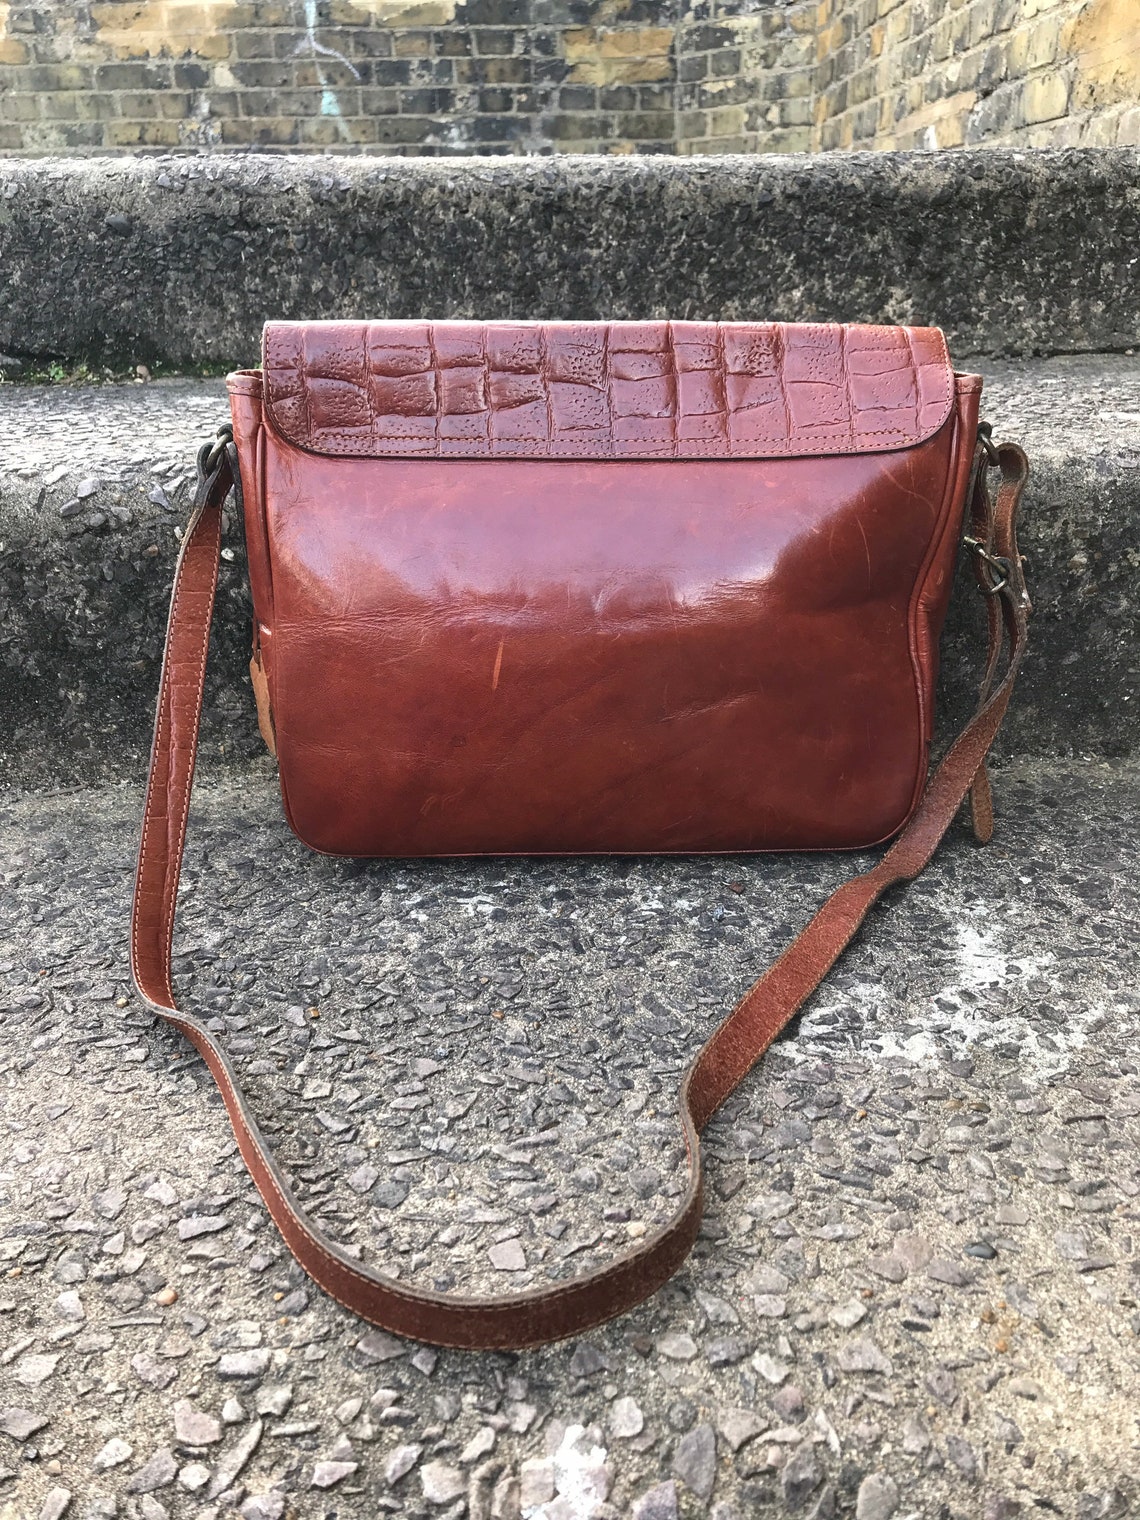 El Campero Tan Leather Satchel. Vintage Satchel. School Bag. | Etsy